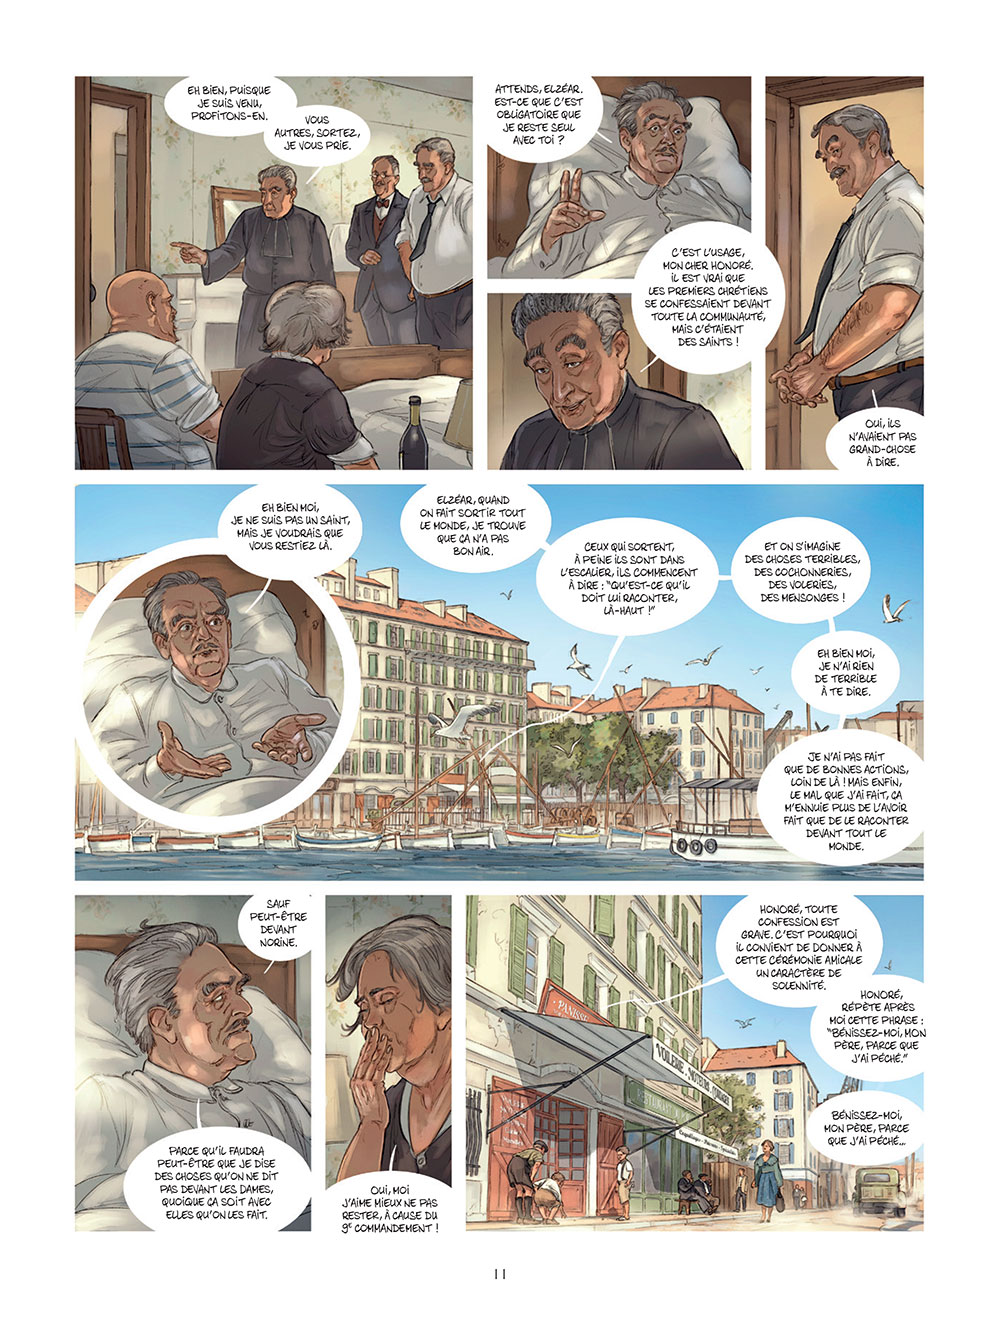 César-page 11